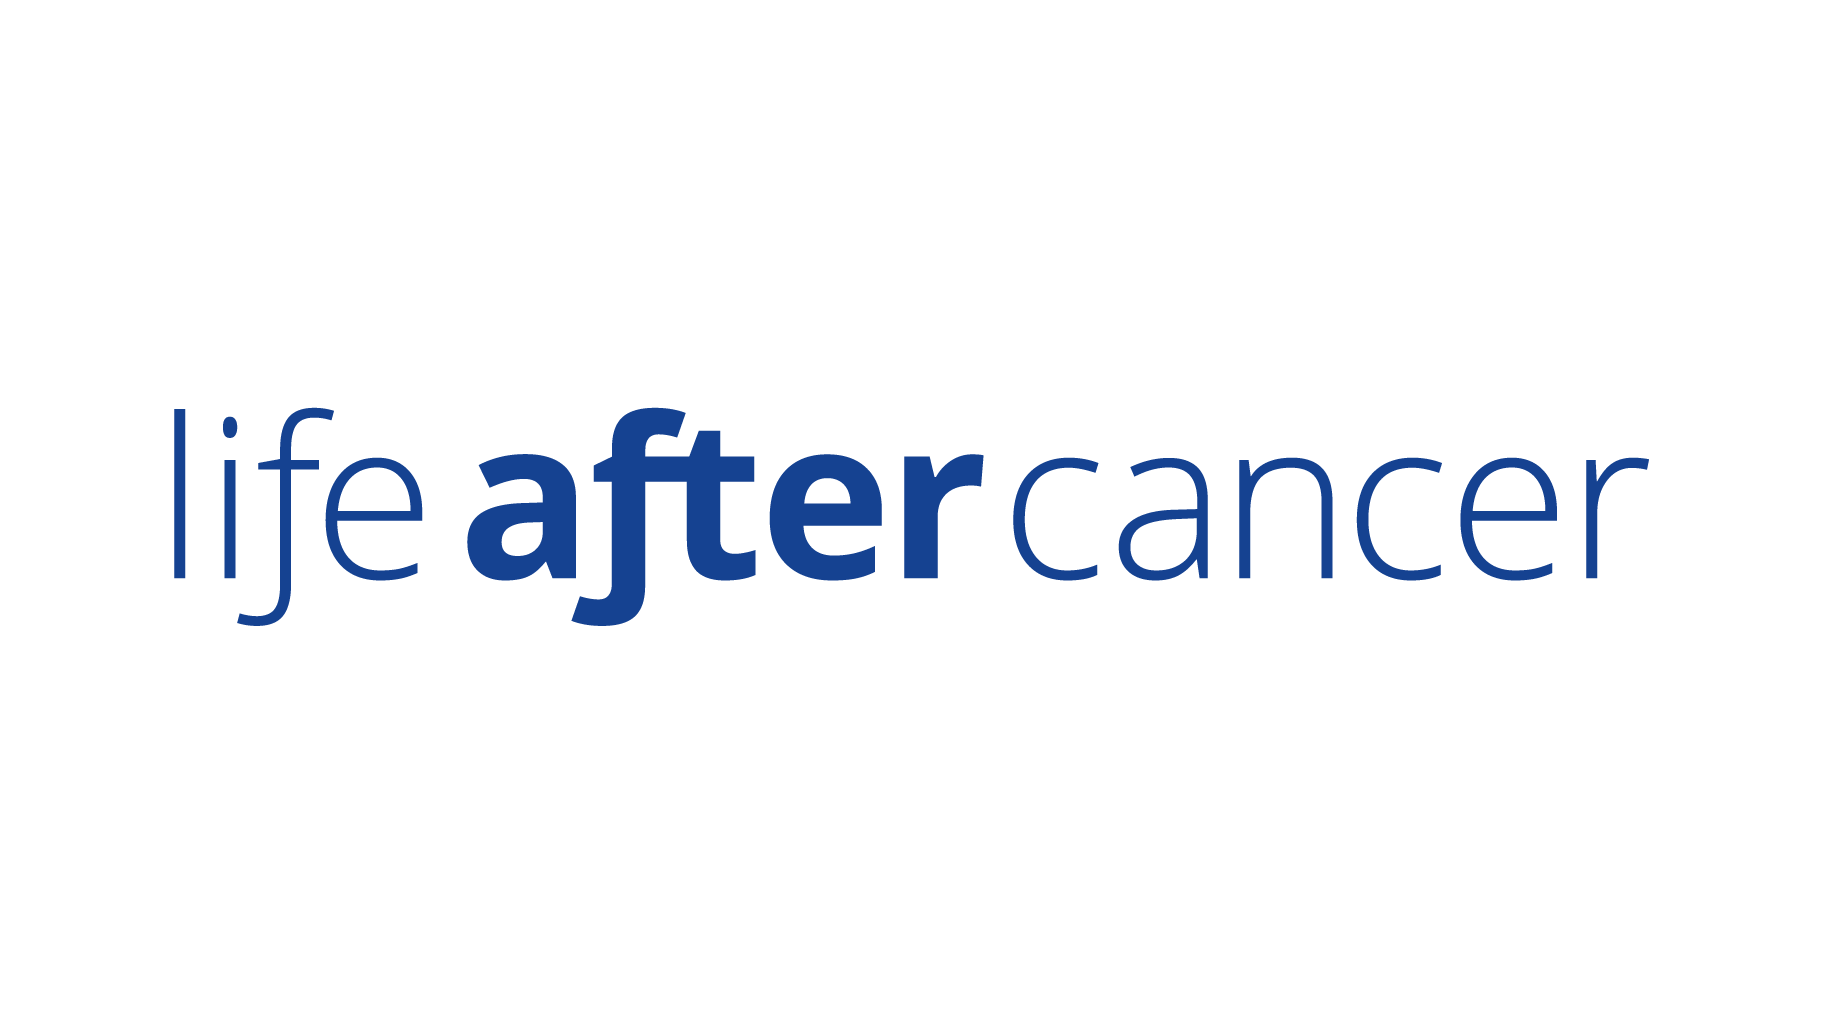 life after cancer logo.png